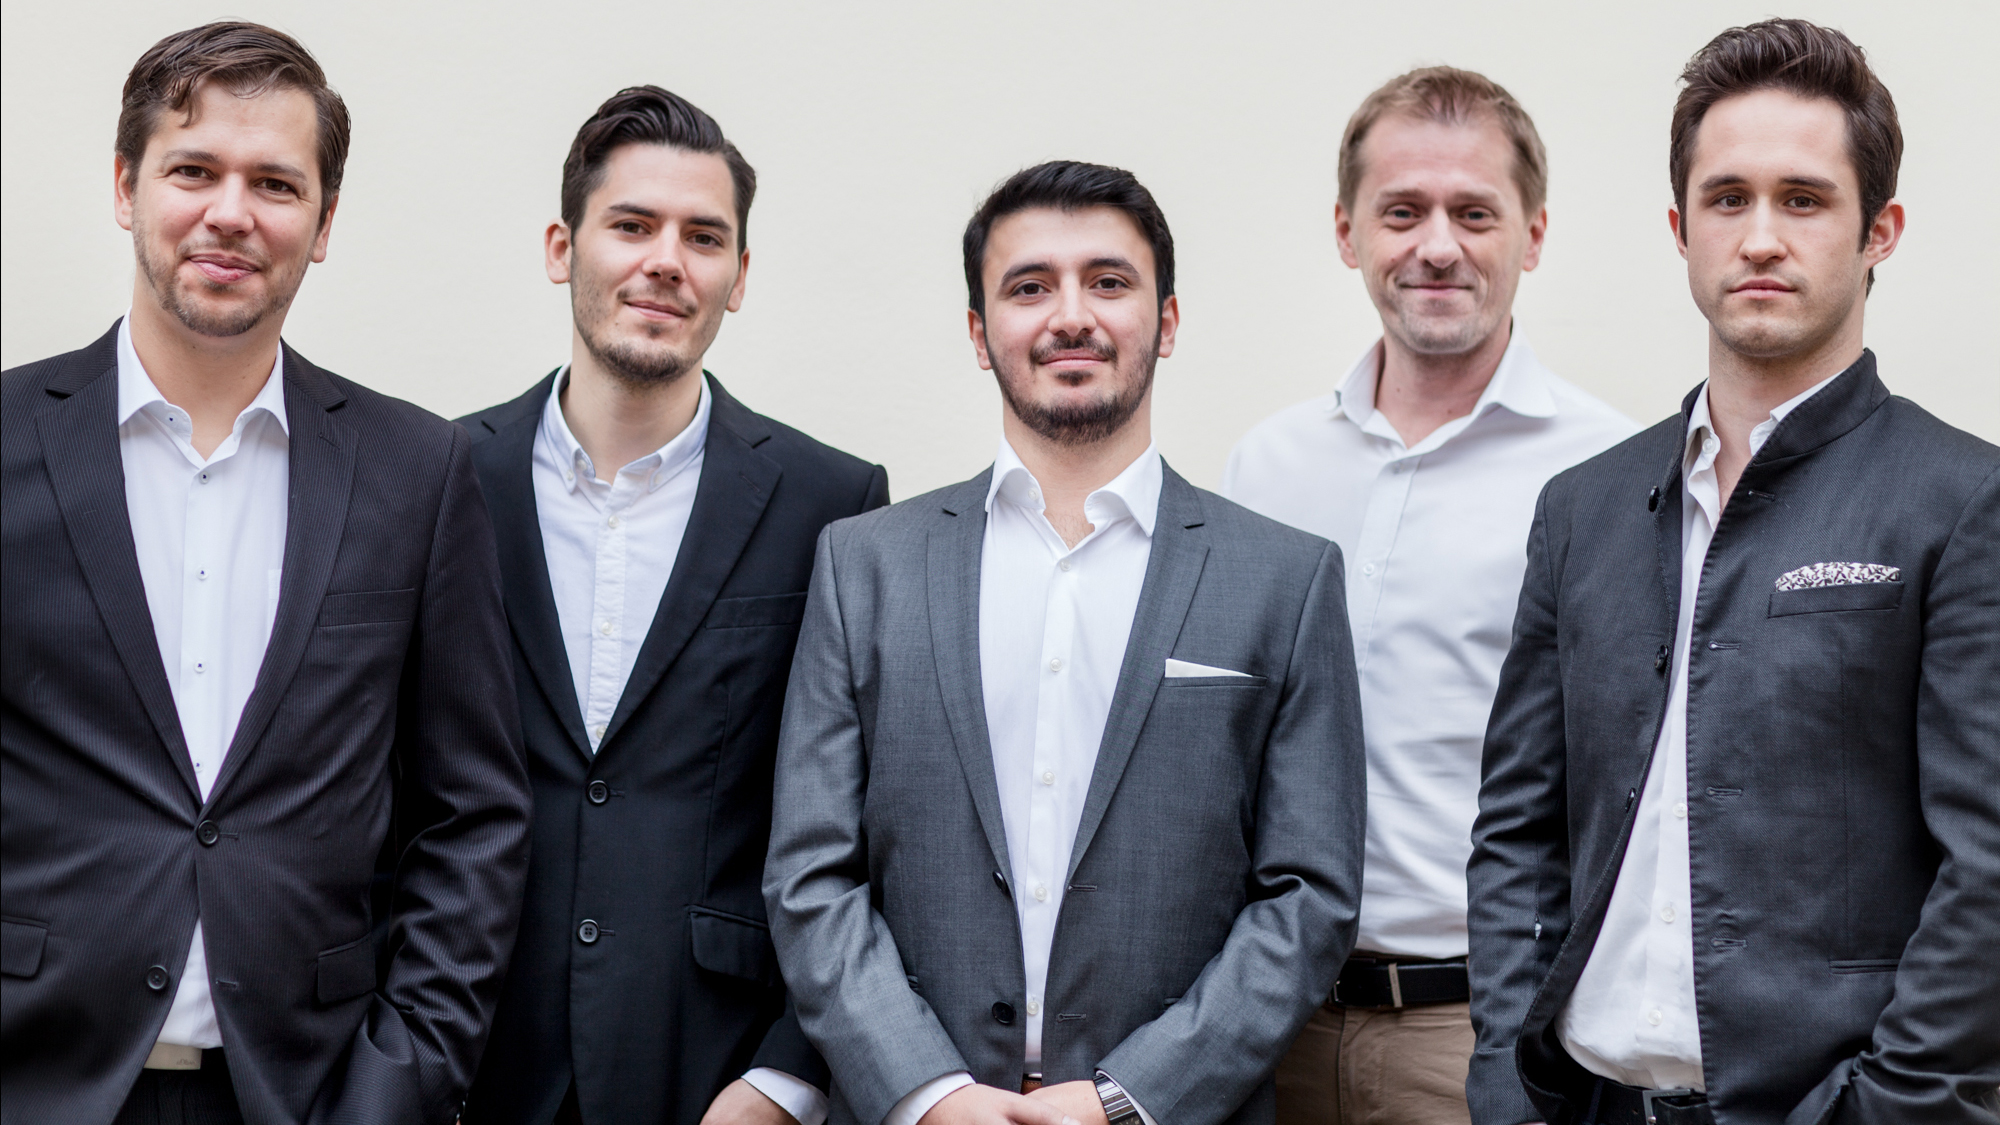 Das Handcheque-Team: Christoph Witzany, Marco della Schiava, Khaled Asef, Michael Bratl und Valentin Jilch. © Handcheque